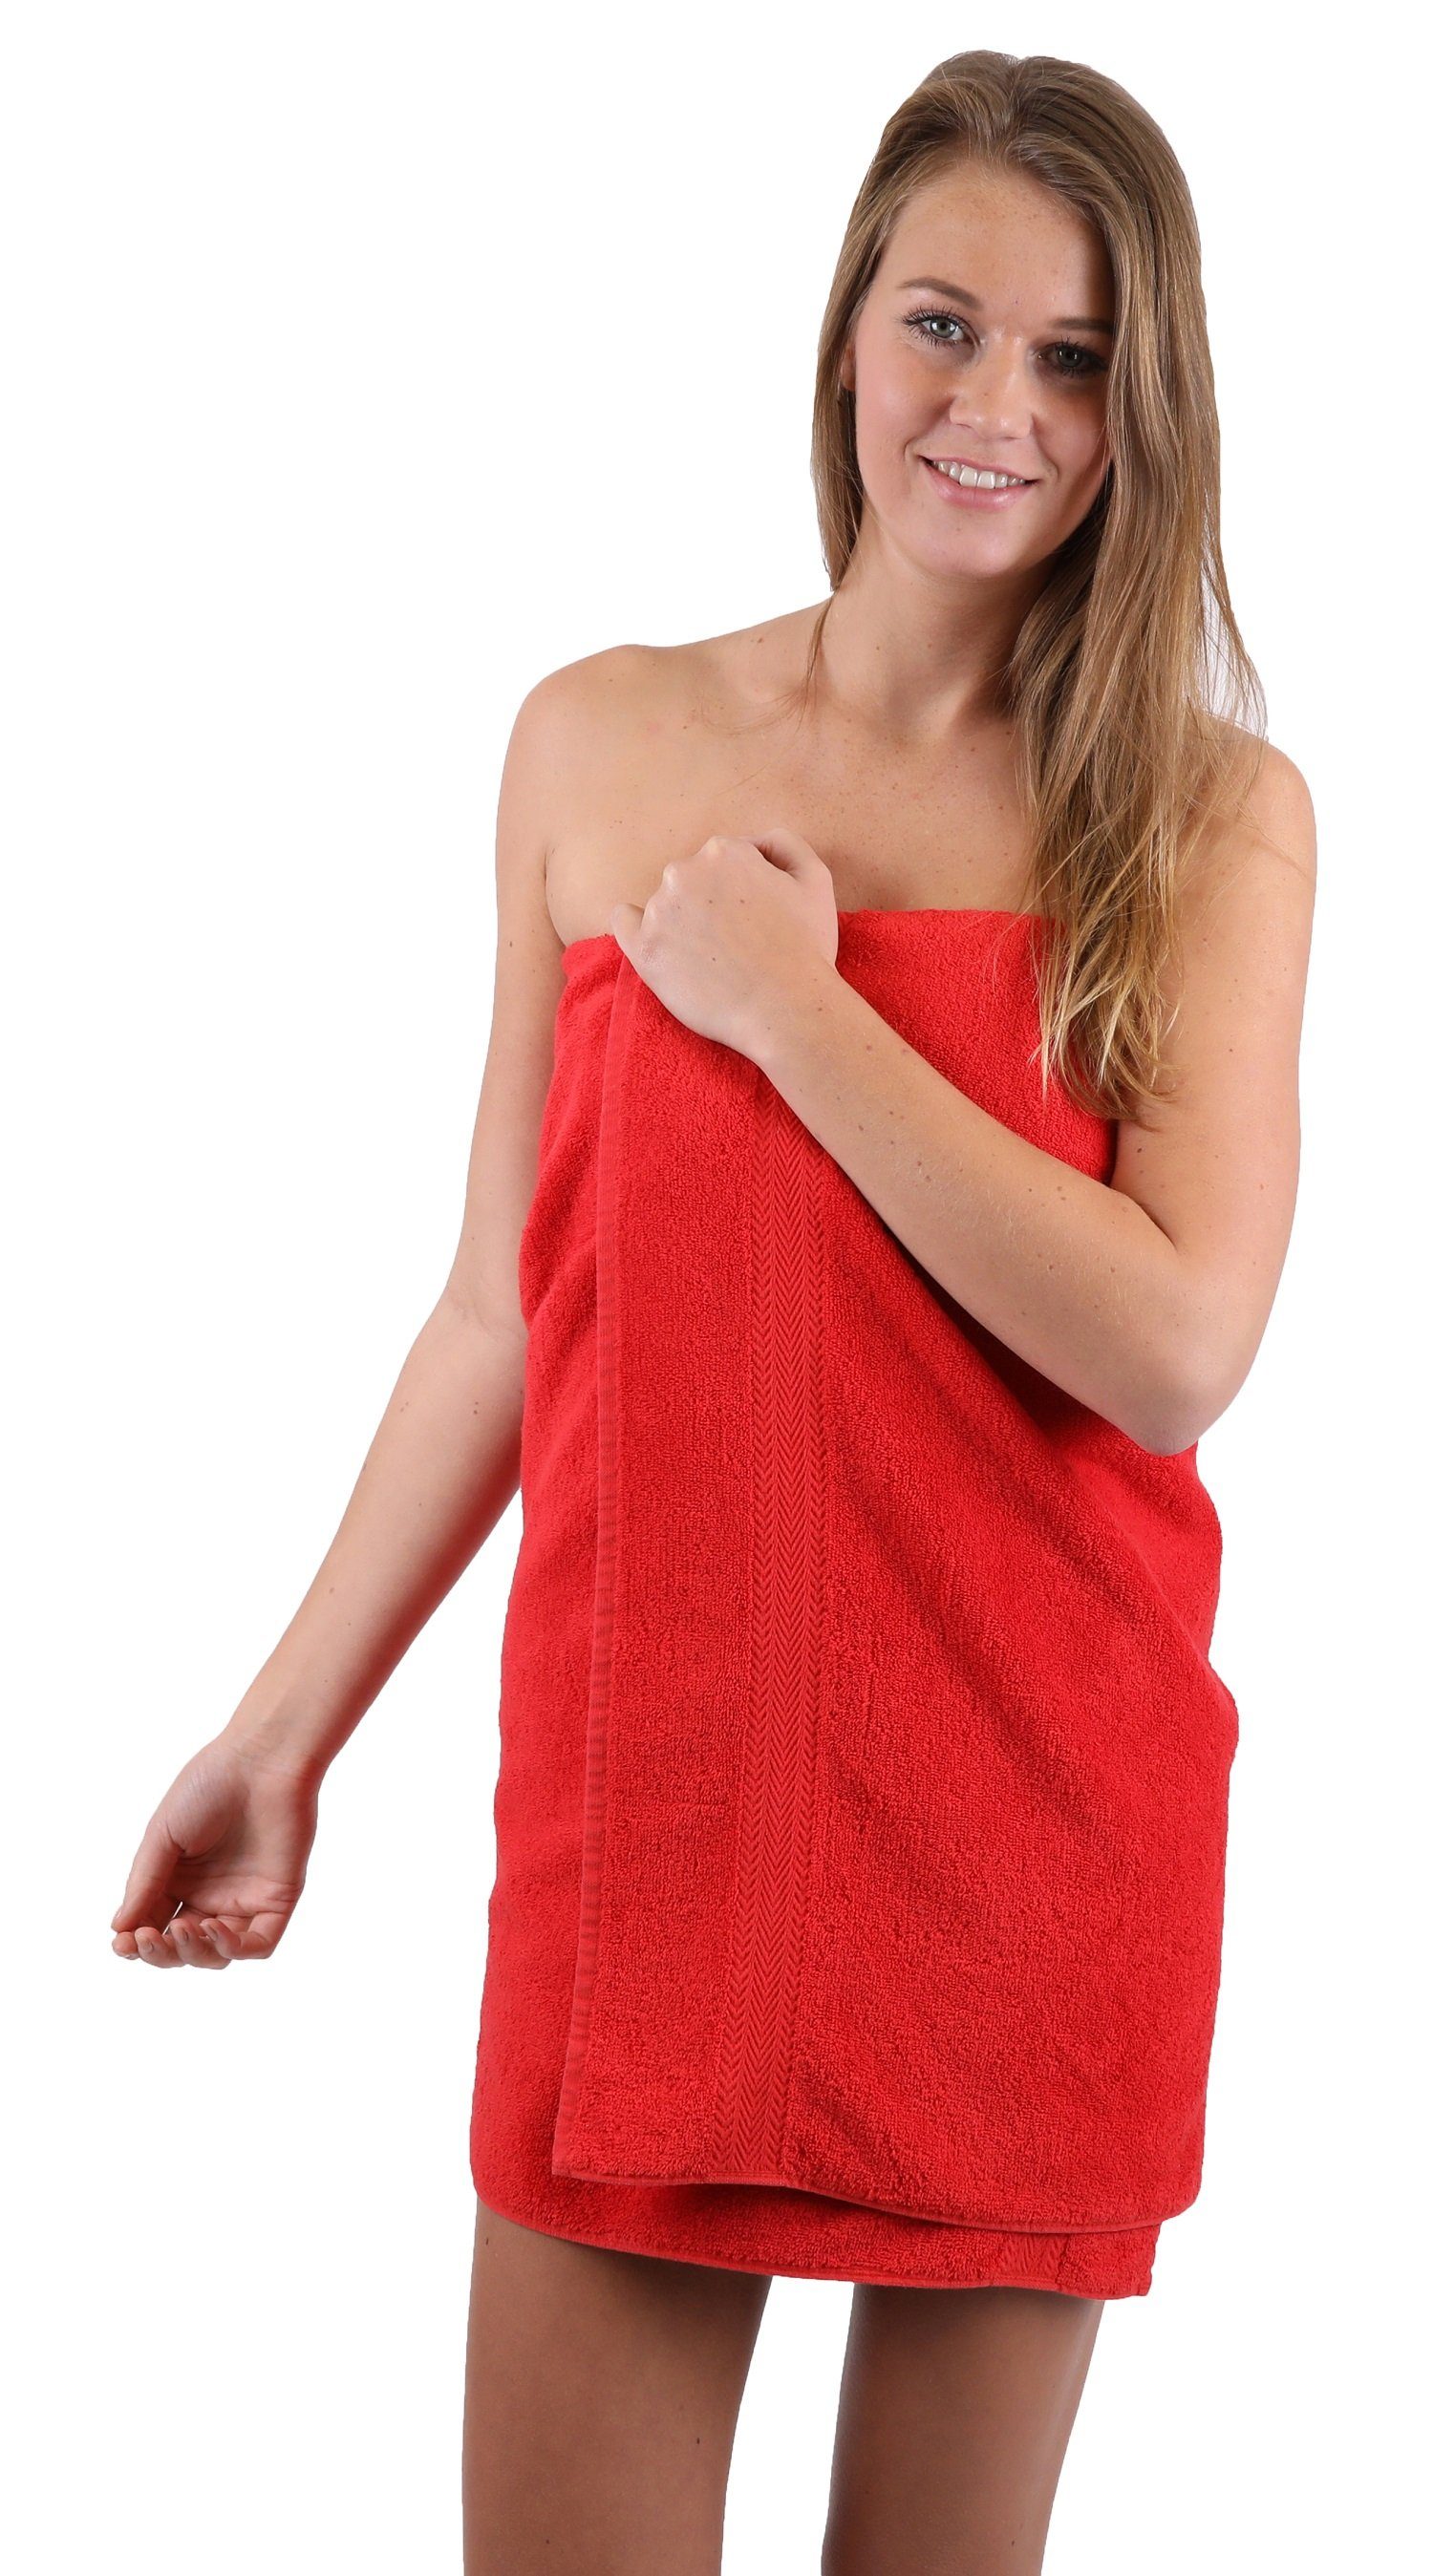 weiß, Set Handtuch 100% TLG. Set Handtuch Farbe Baumwolle und rot Betz 10 Classic